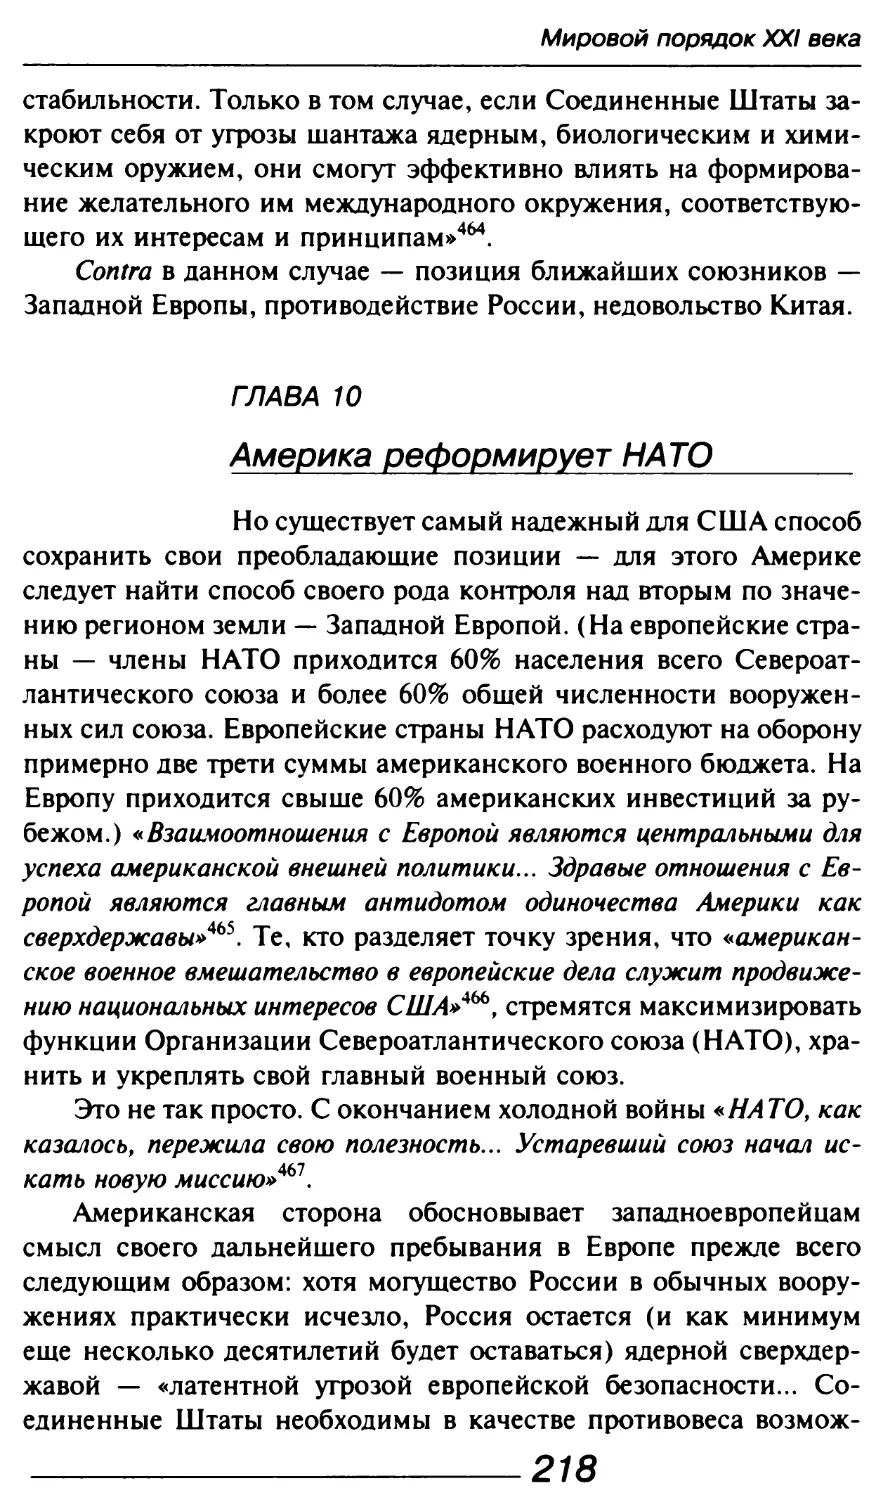 Глава 10. Америка реформирует НАТО